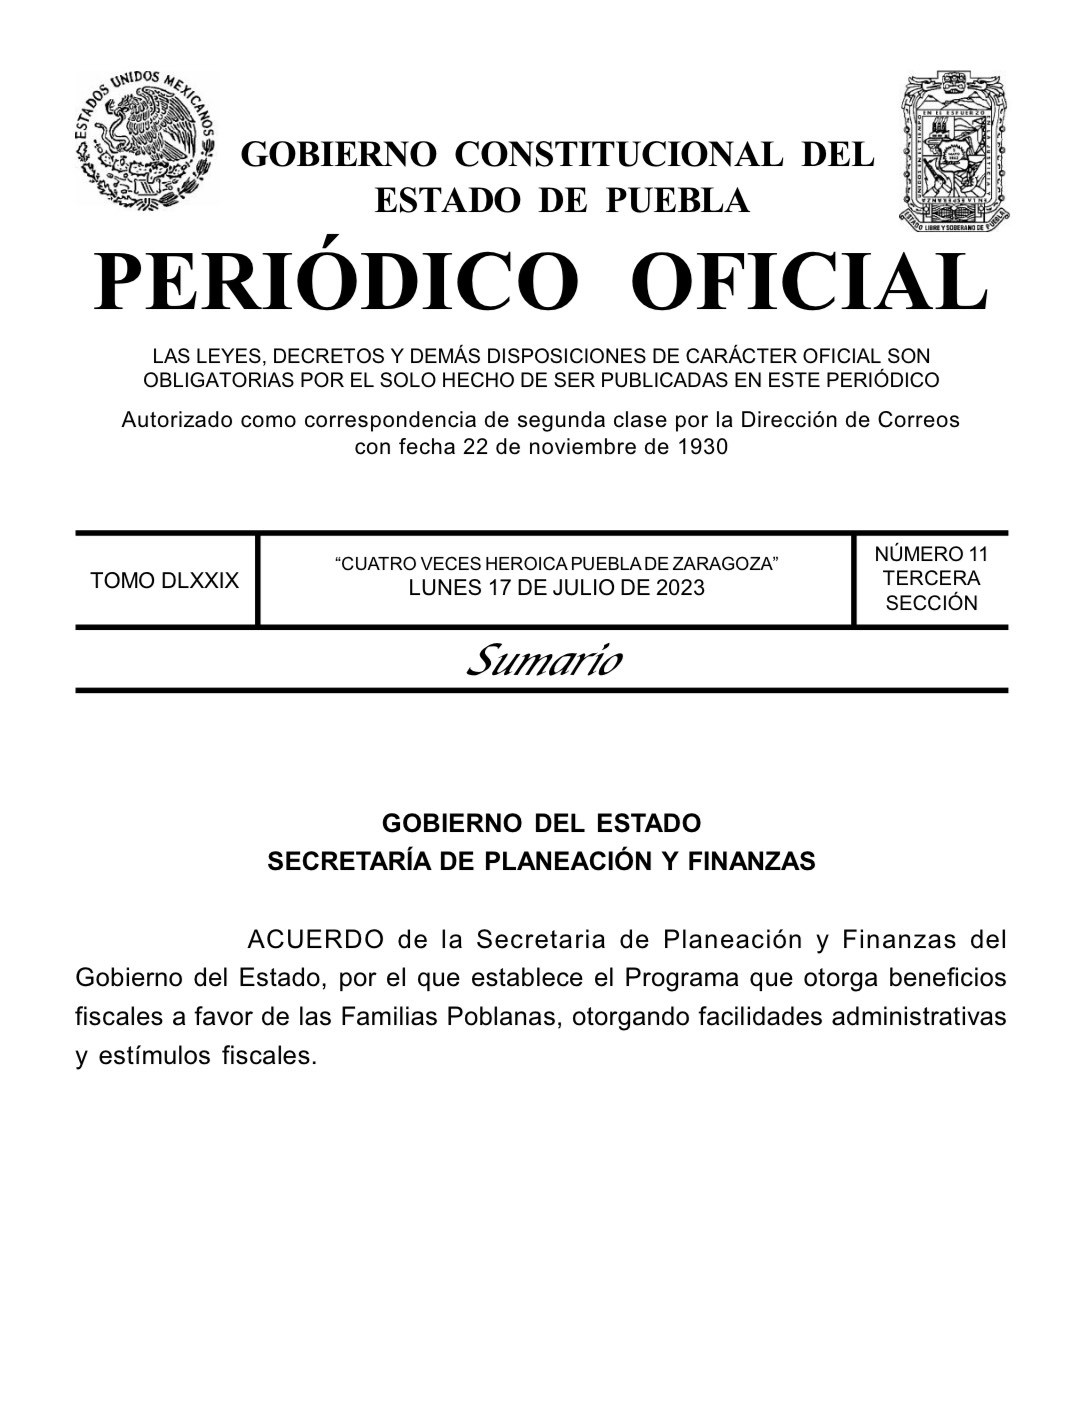 Gobierno de Puebla publicó un decreto para autorizar descuentos en impuestos y multas.